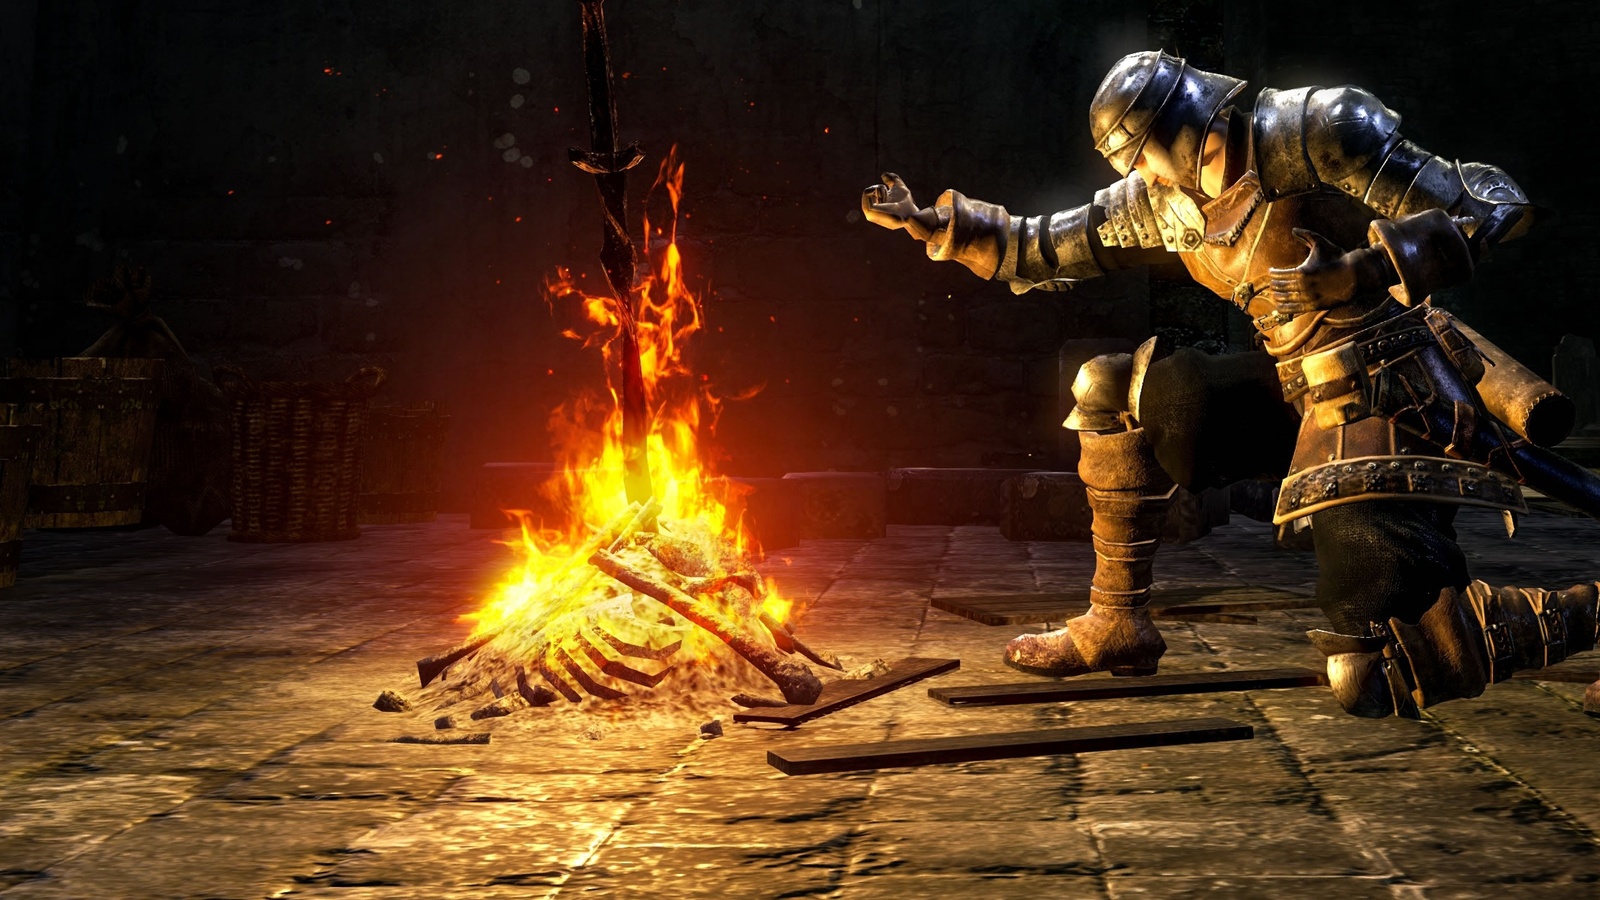 10 jogos parecidos com Dark Souls no PC, PlayStation e outras plataformas -  Olhar Digital